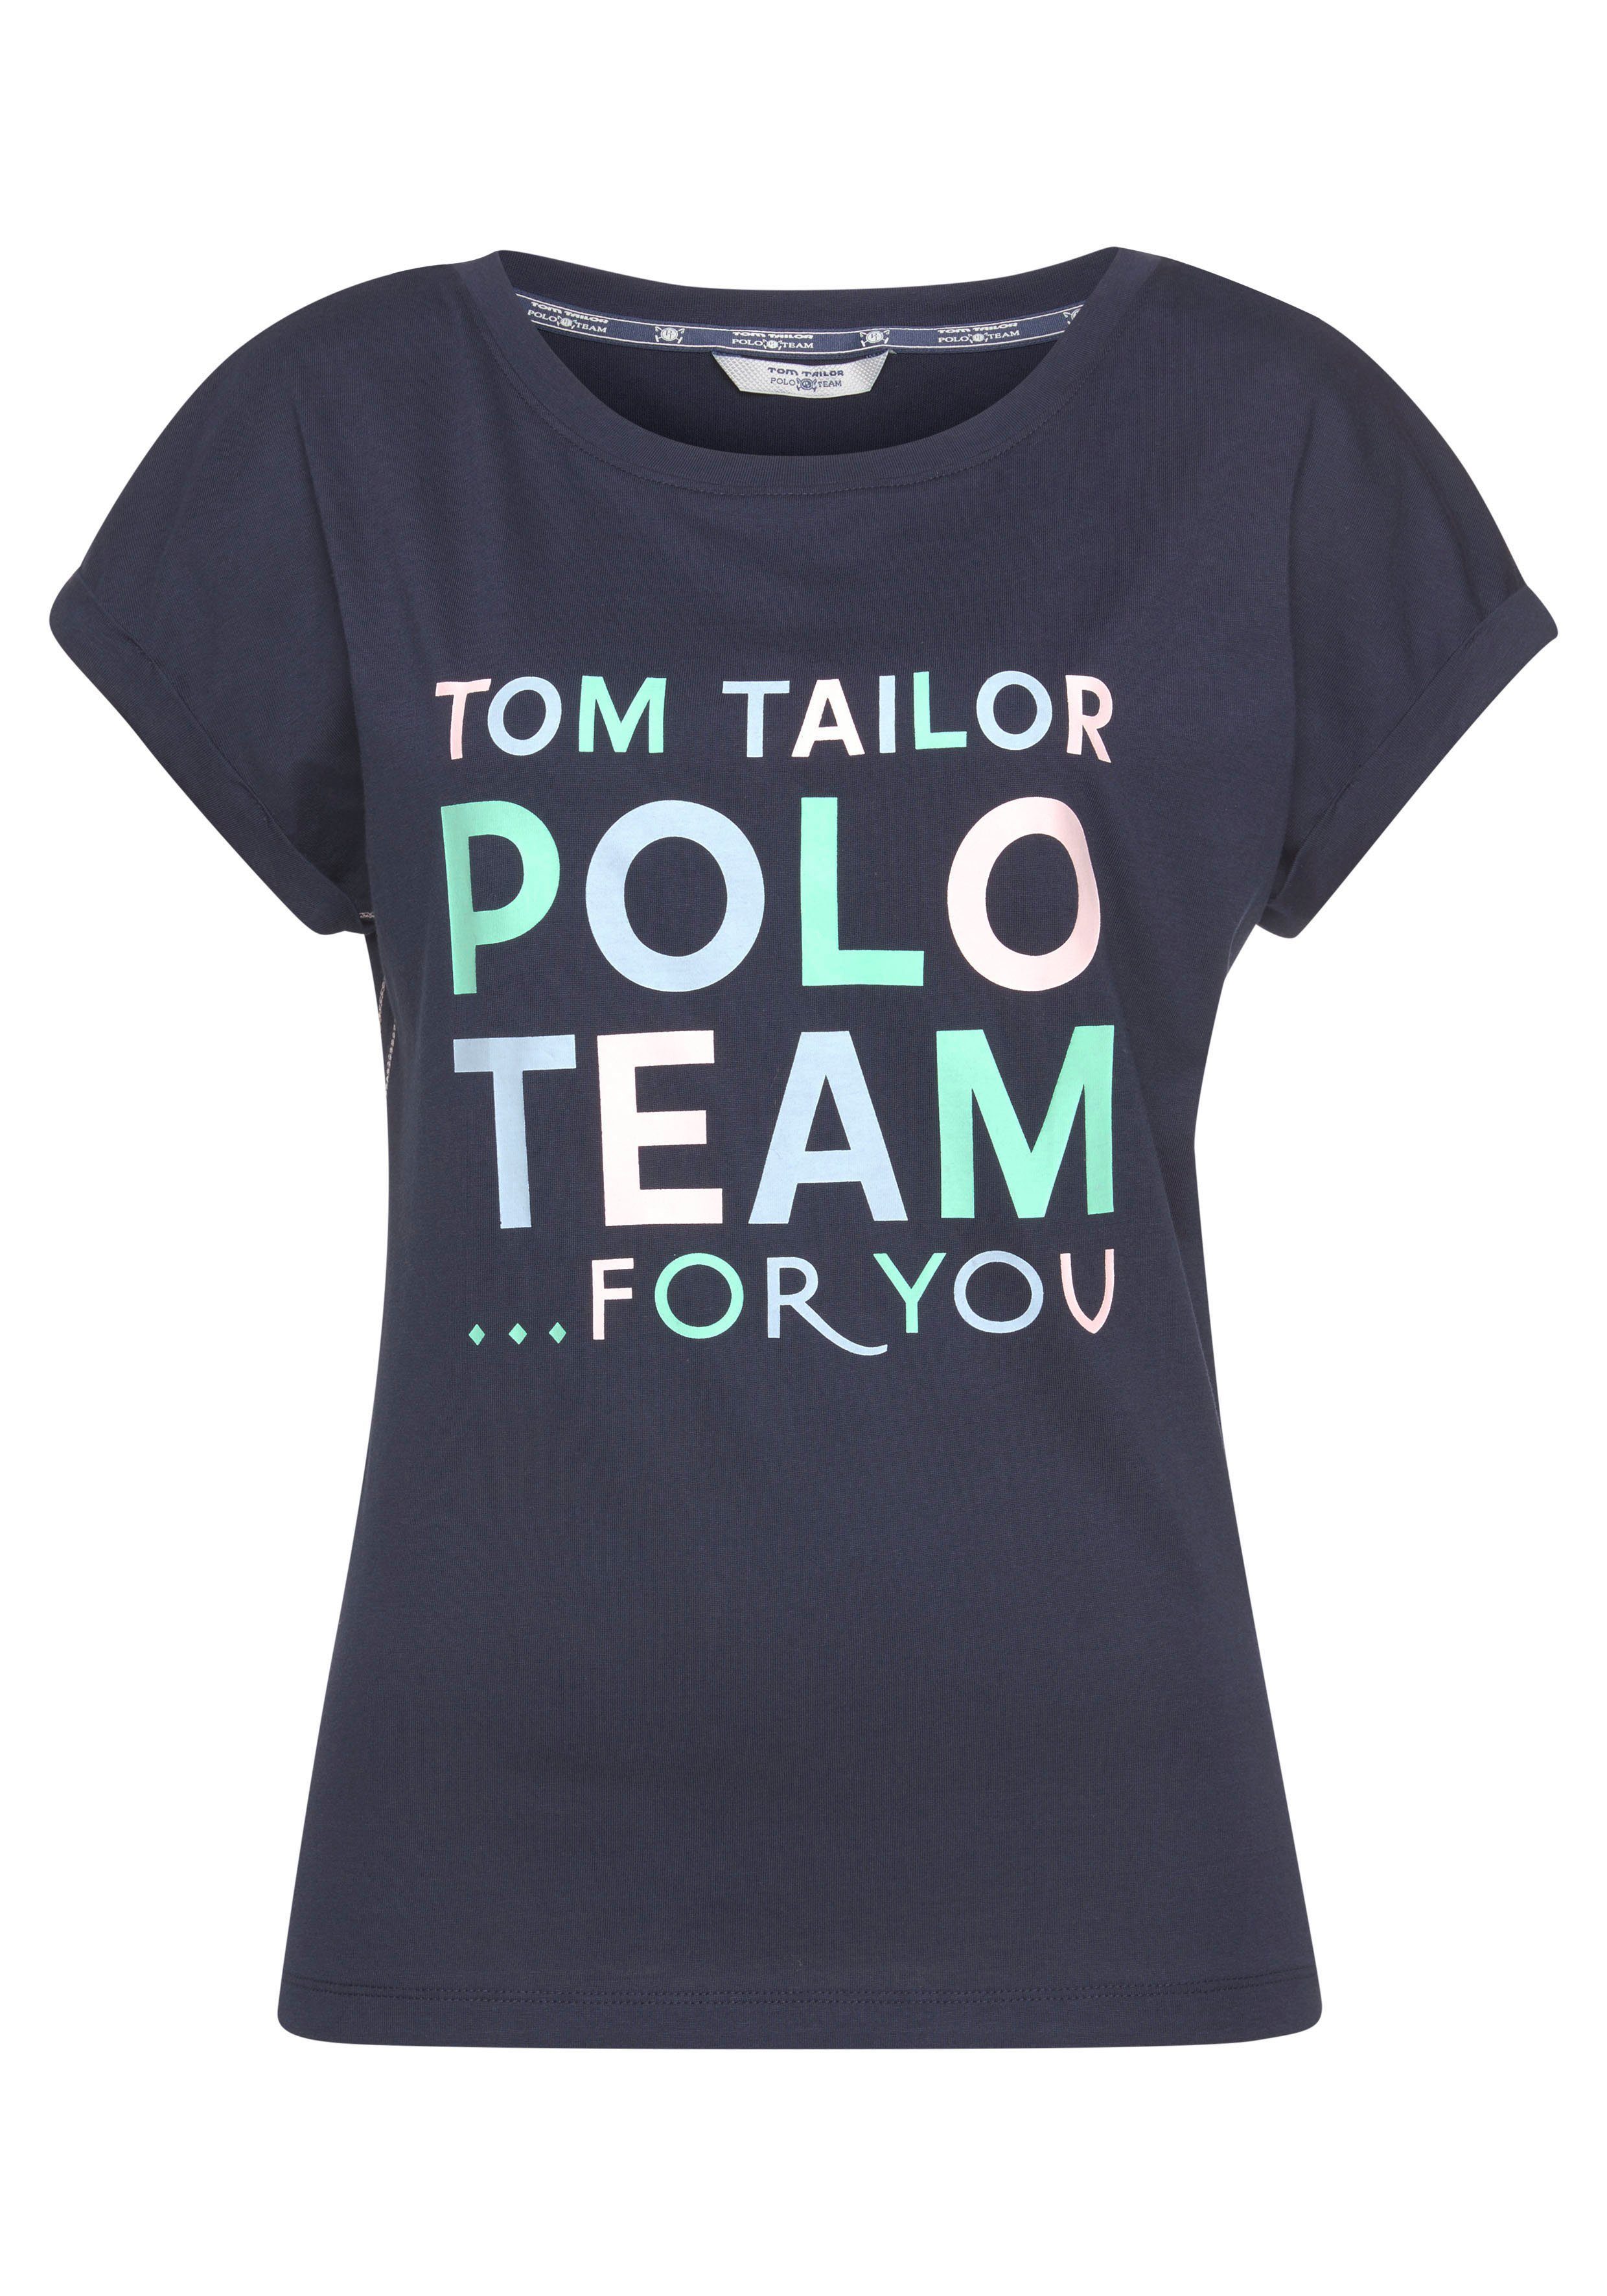 Logo-Print Team großem TOM TAILOR farbenfrohen Print-Shirt Polo